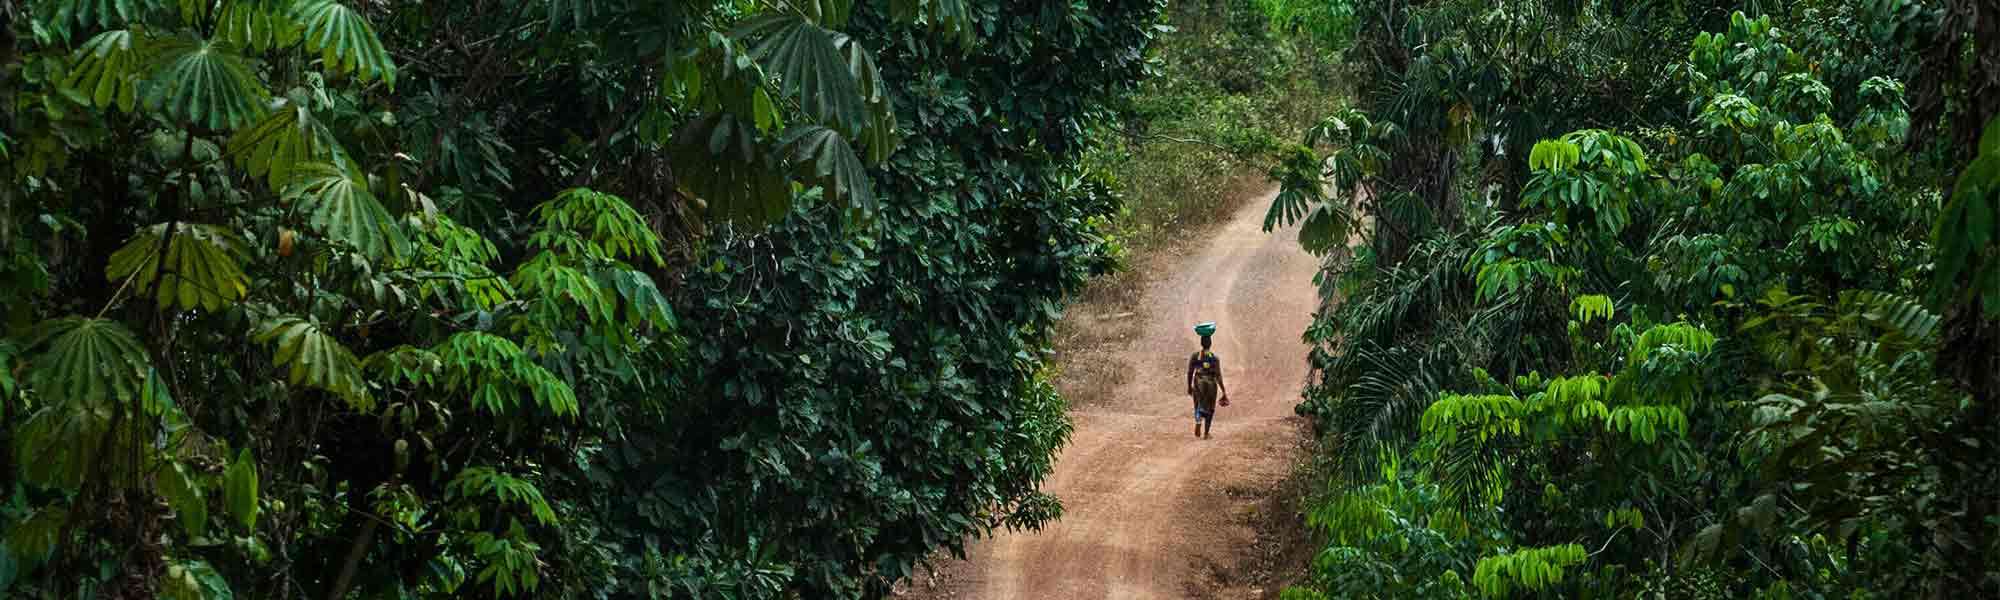 Kvinne på en øde vei i en skog i Liberia